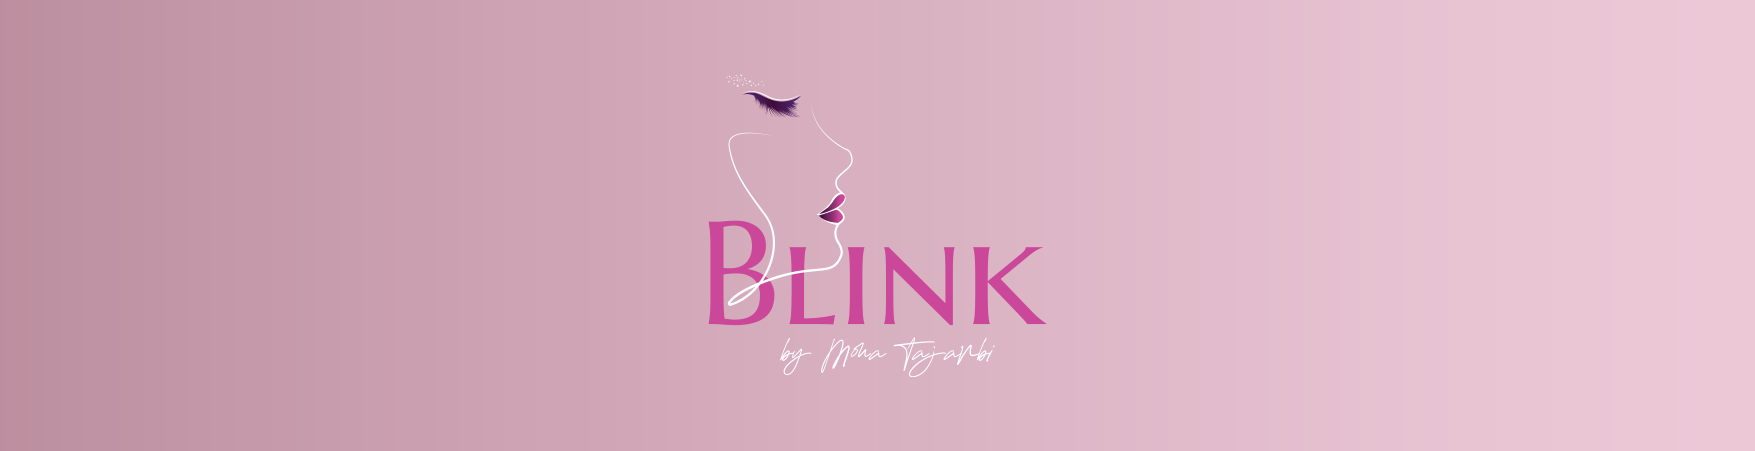 Blink by Mona Tajarbi